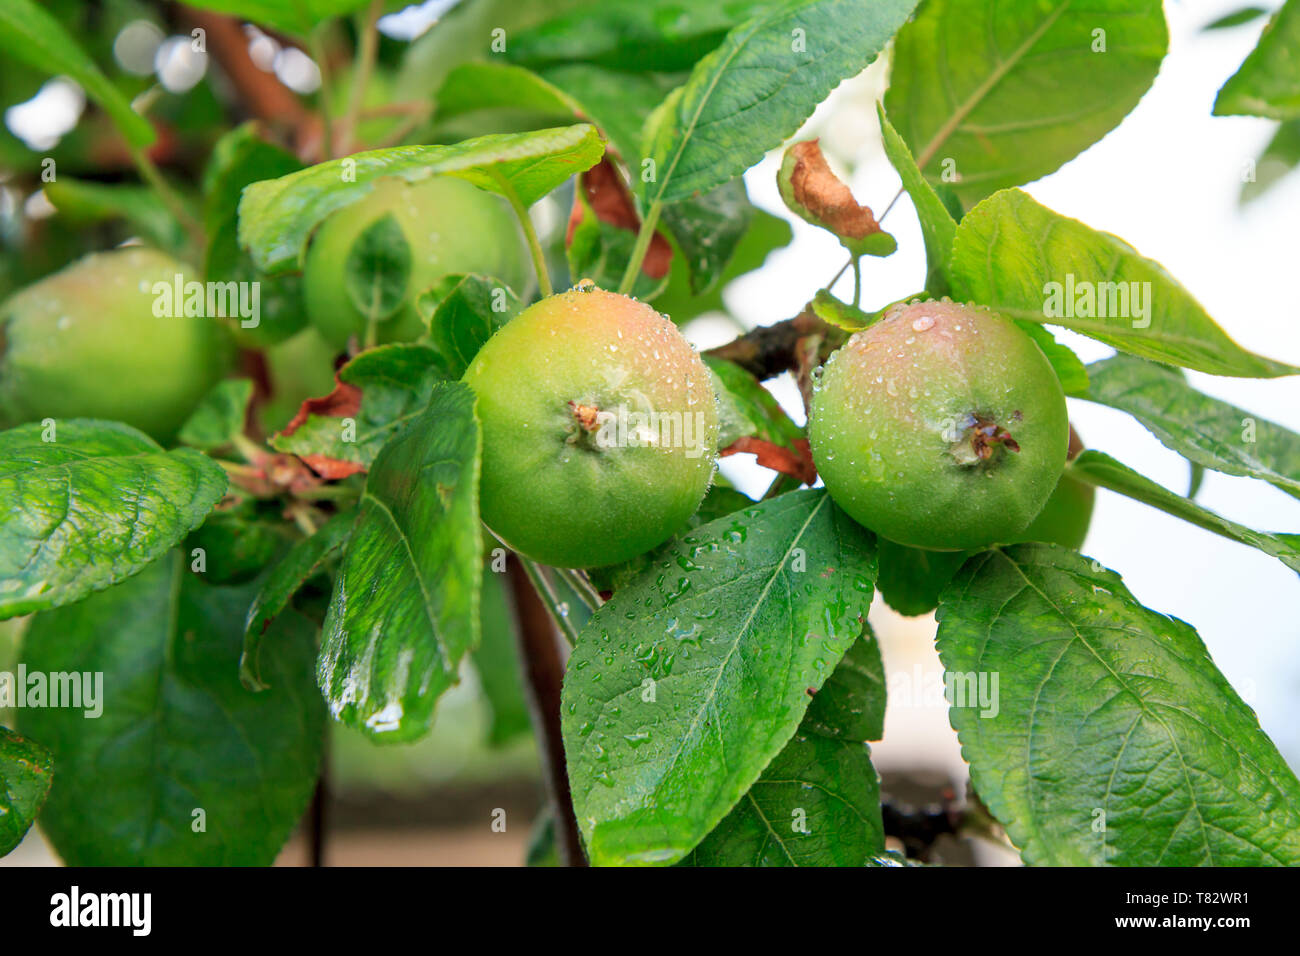 Fruits de pommes immatures sur la branche de l'arbre avec les feuilles touchées par la maladie fongique. Profondeur de champ. La culture des fruits dans le jardin. Banque D'Images